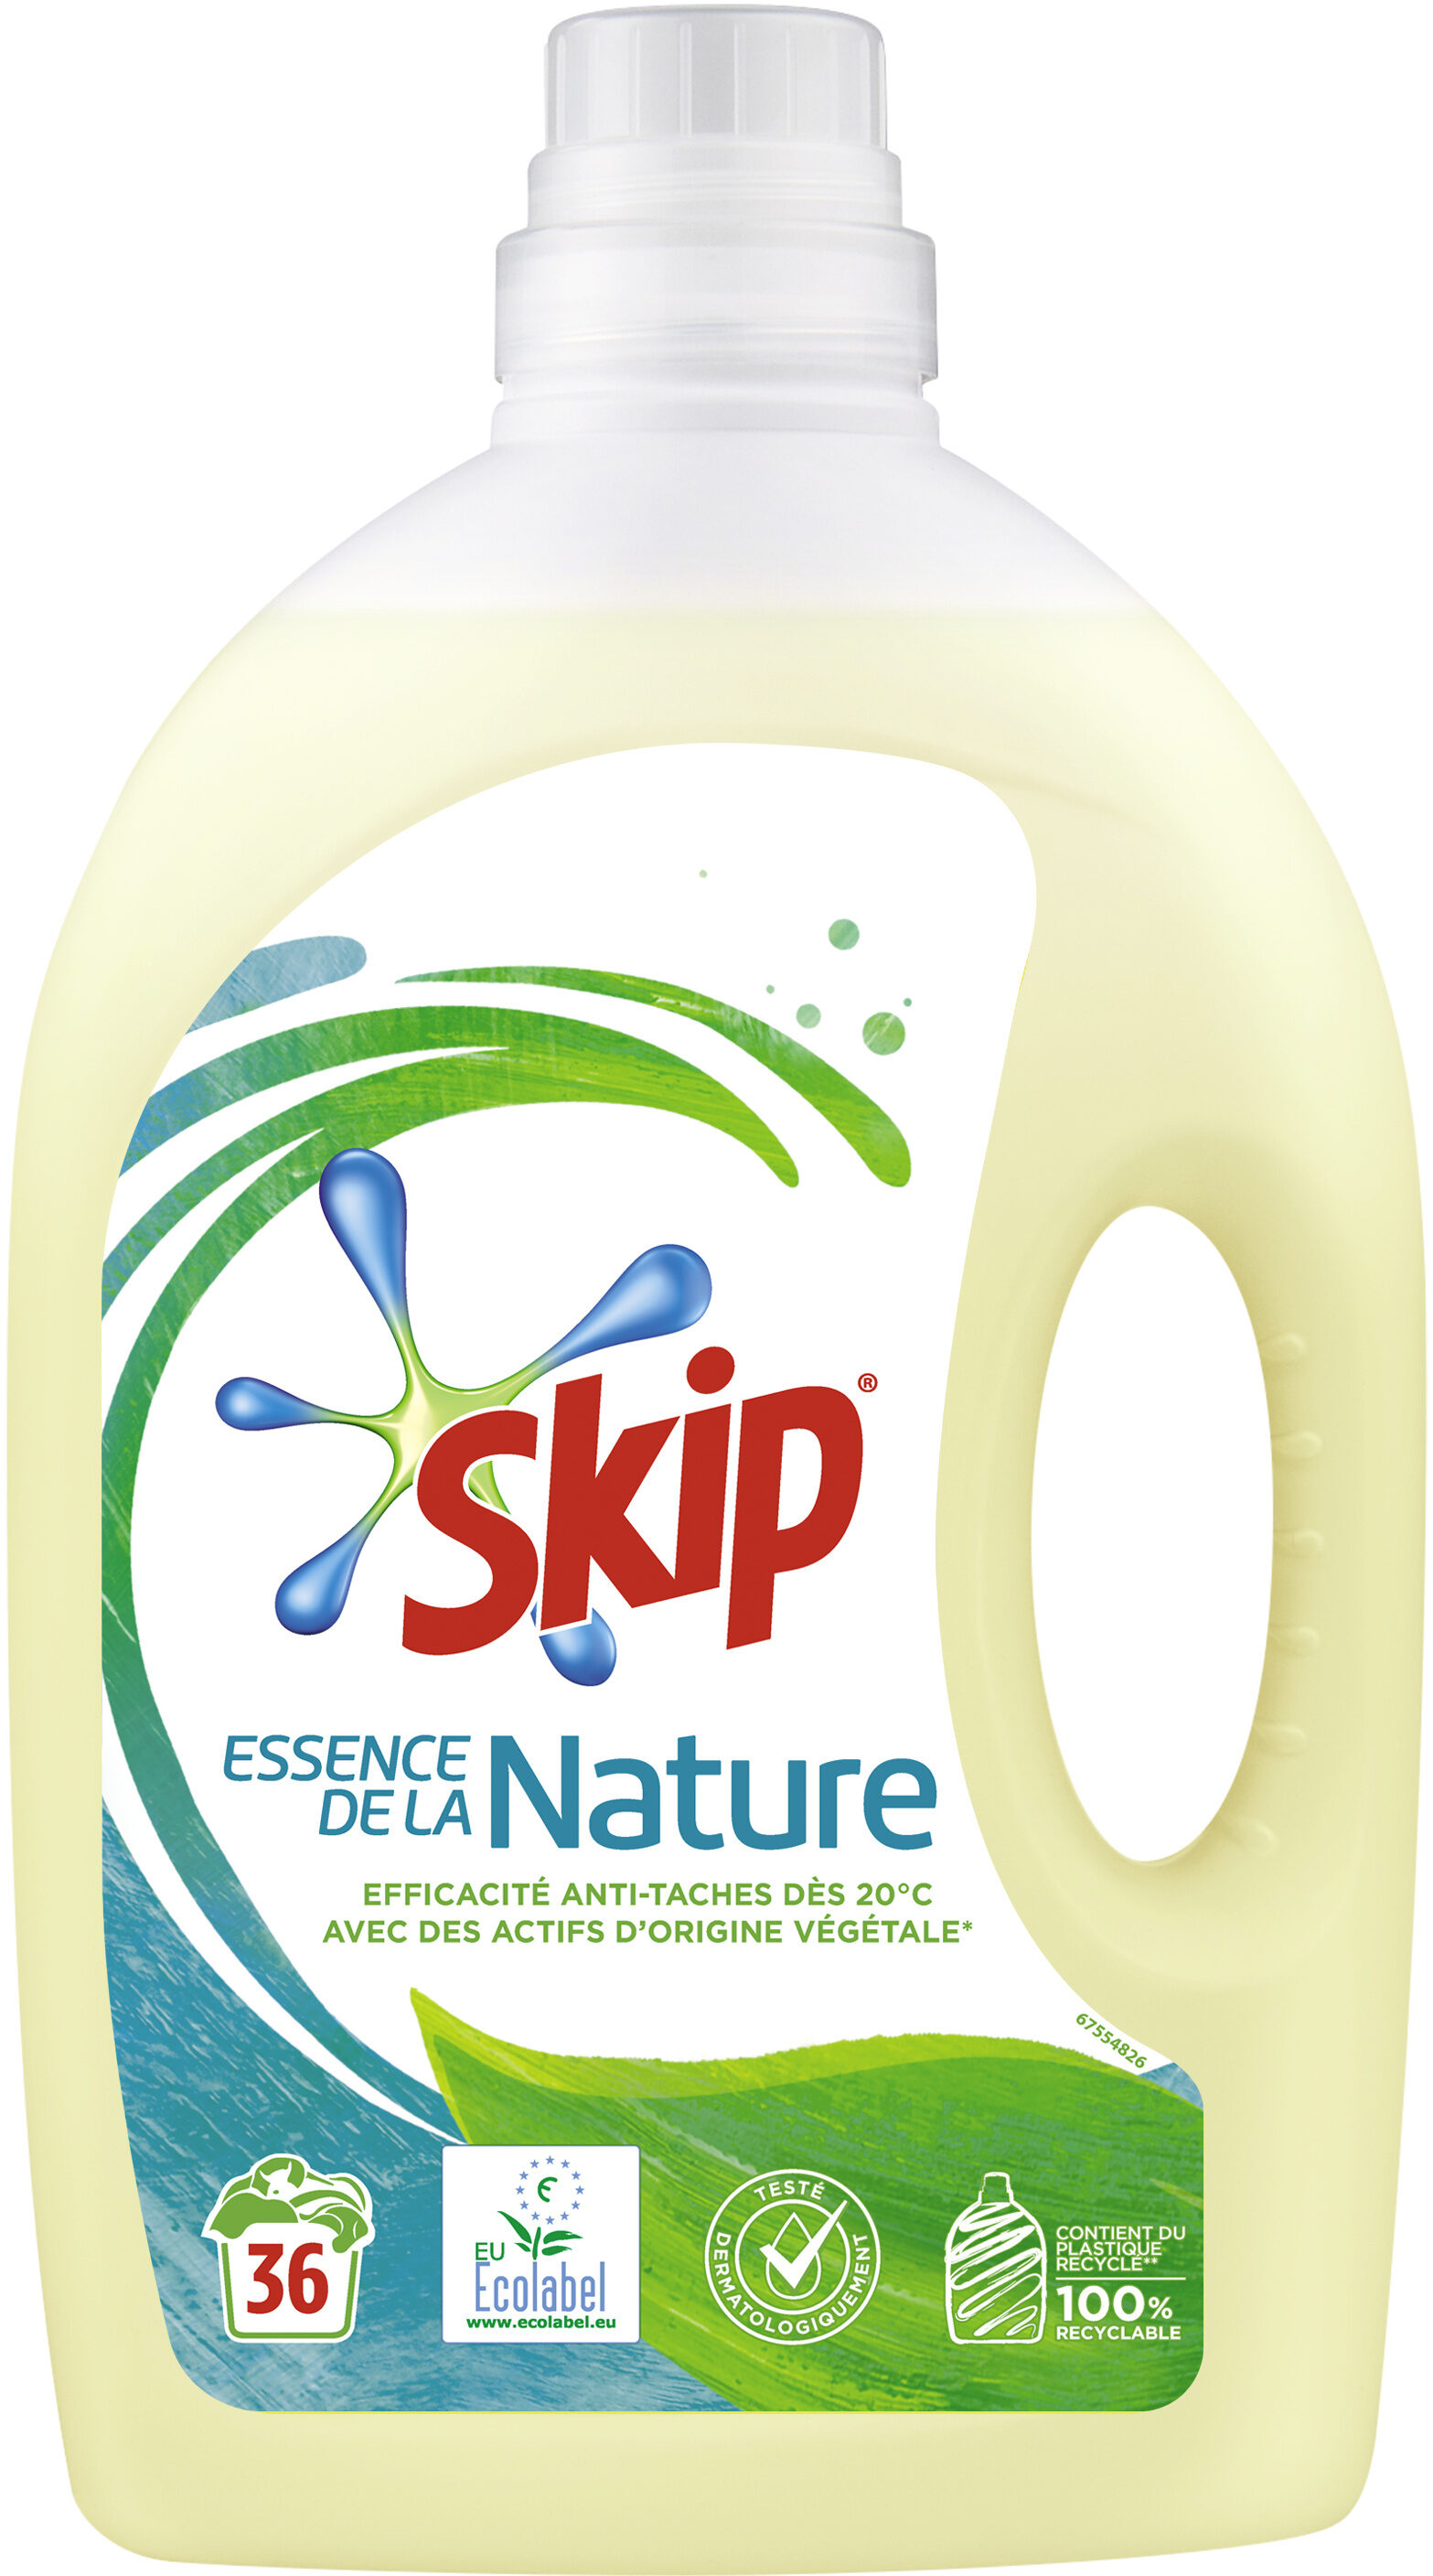 Skip Lessive Liquide Eco Label Bouteille 1,98l 36 Lavages - Product - fr